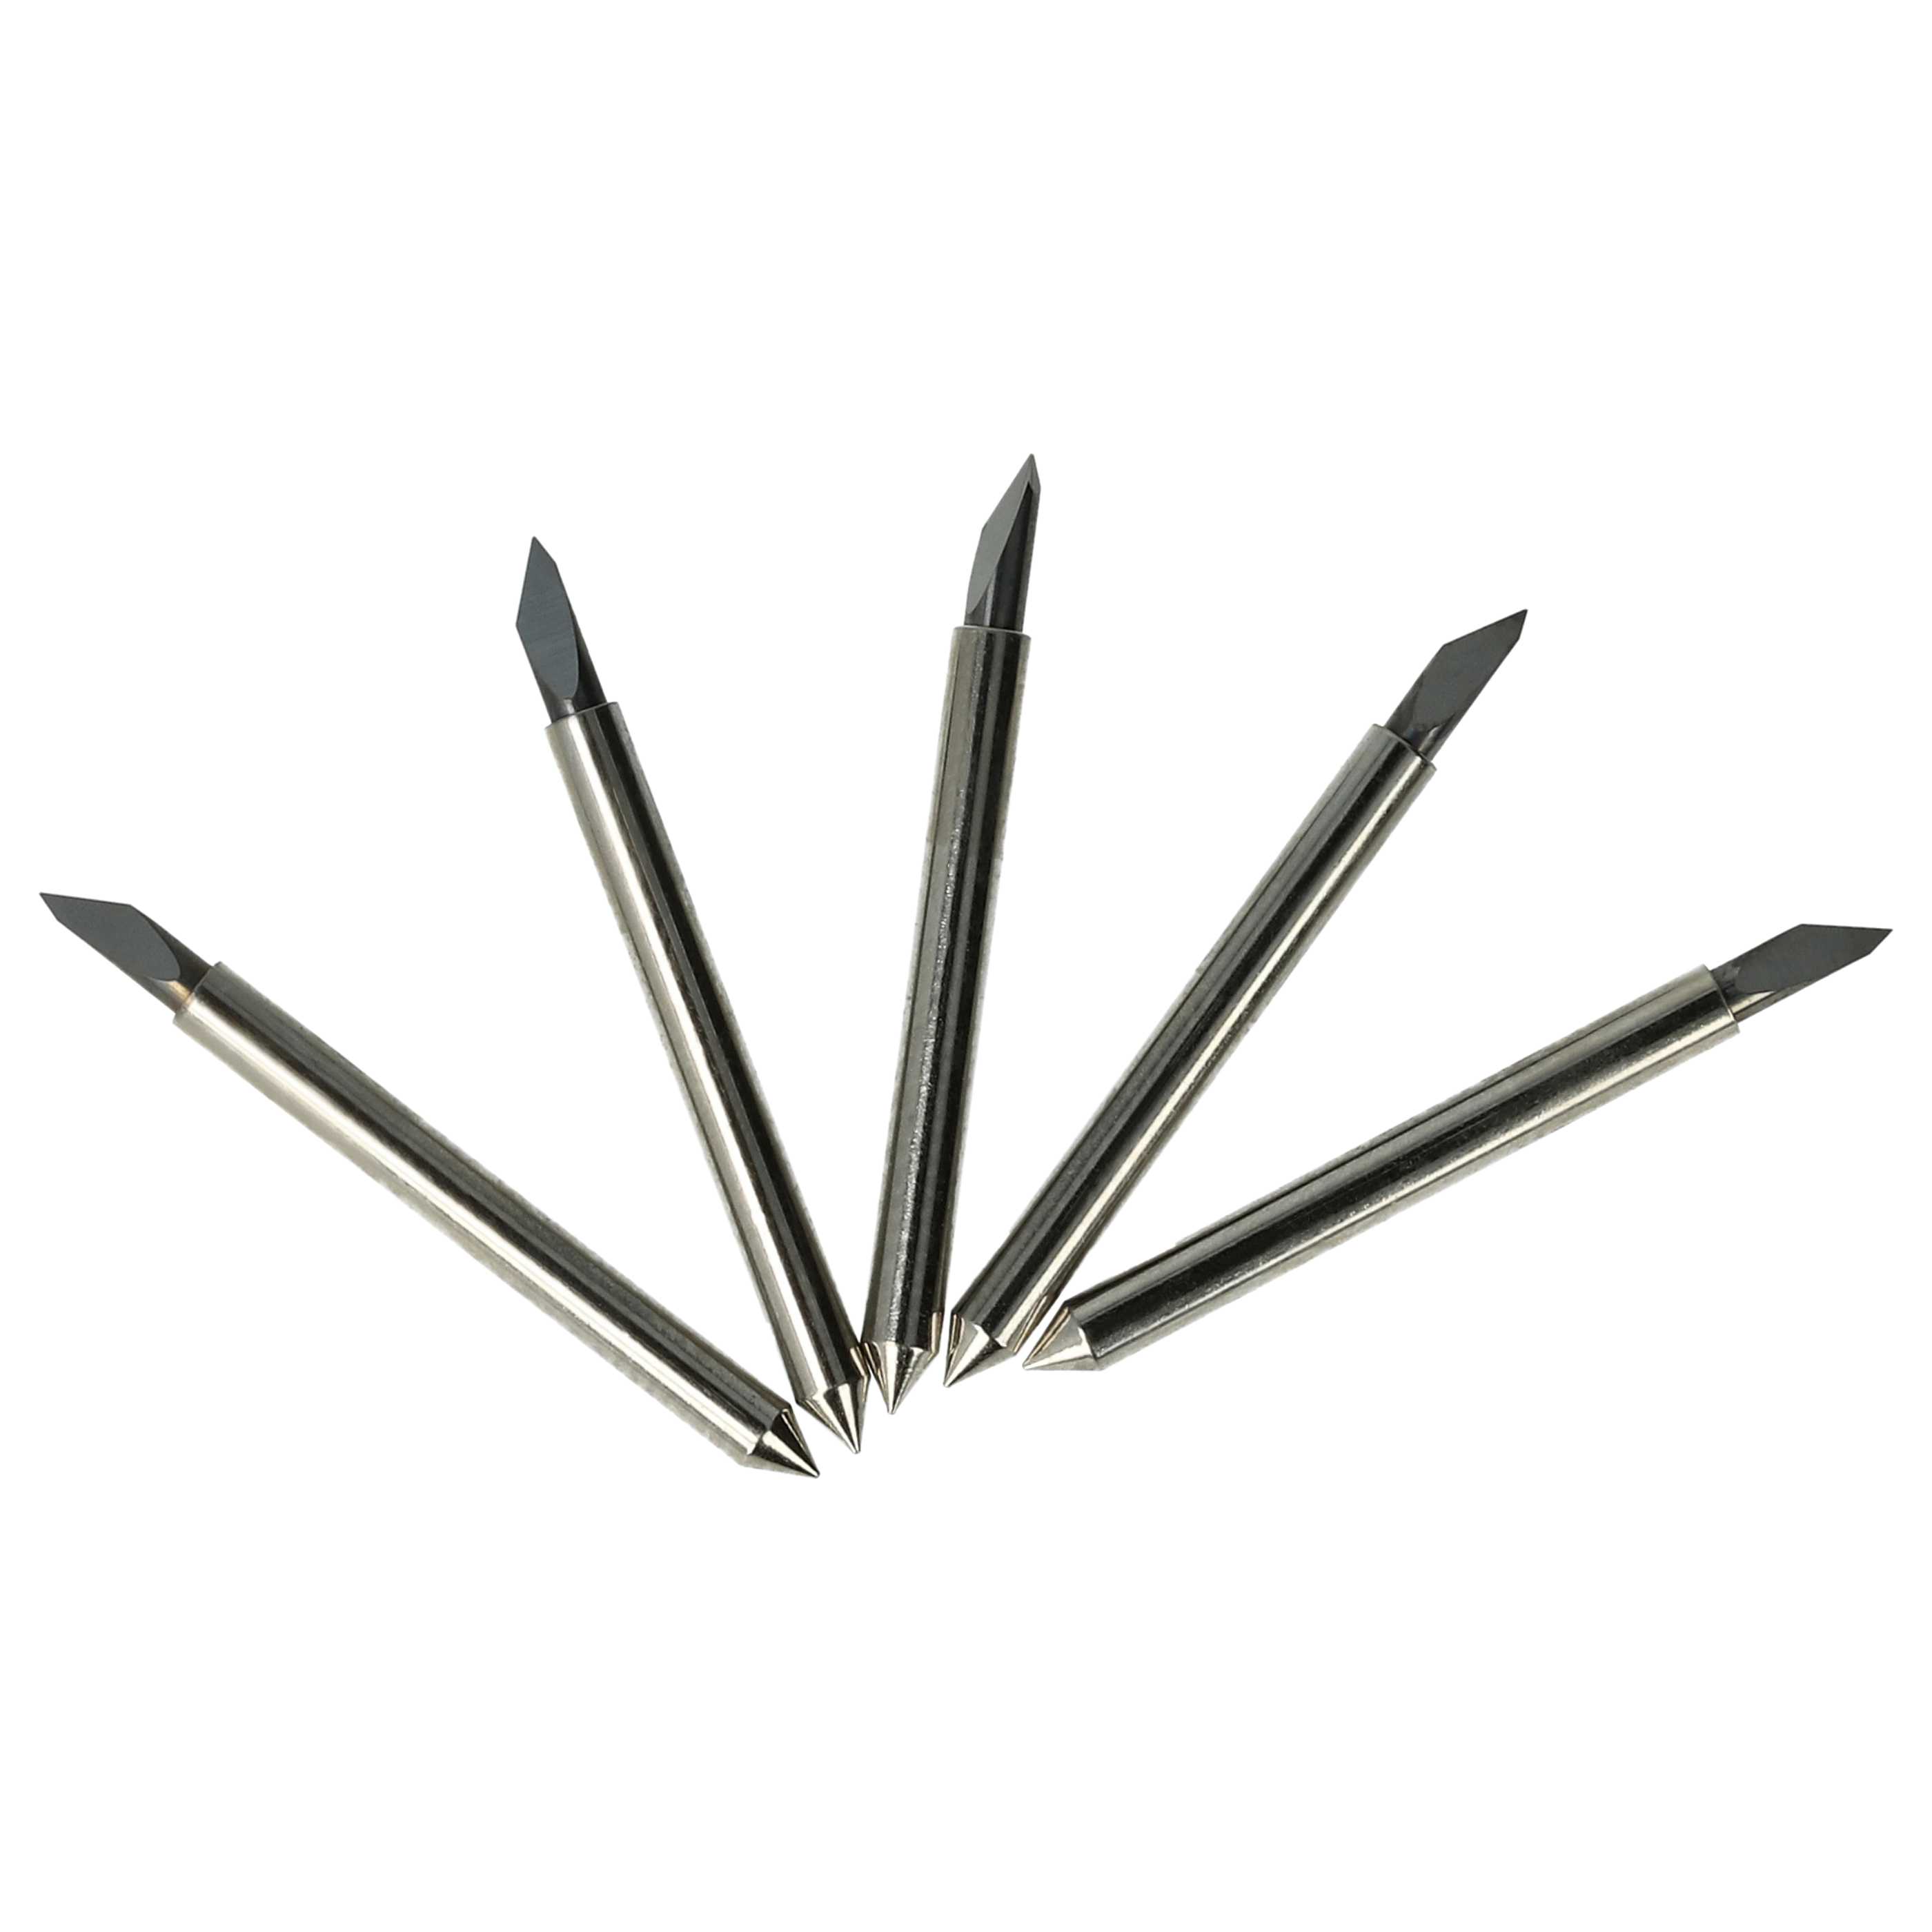 5x Plotter Blade suitable for CSR Ecom-2 Renker Cutting Plotter etc.